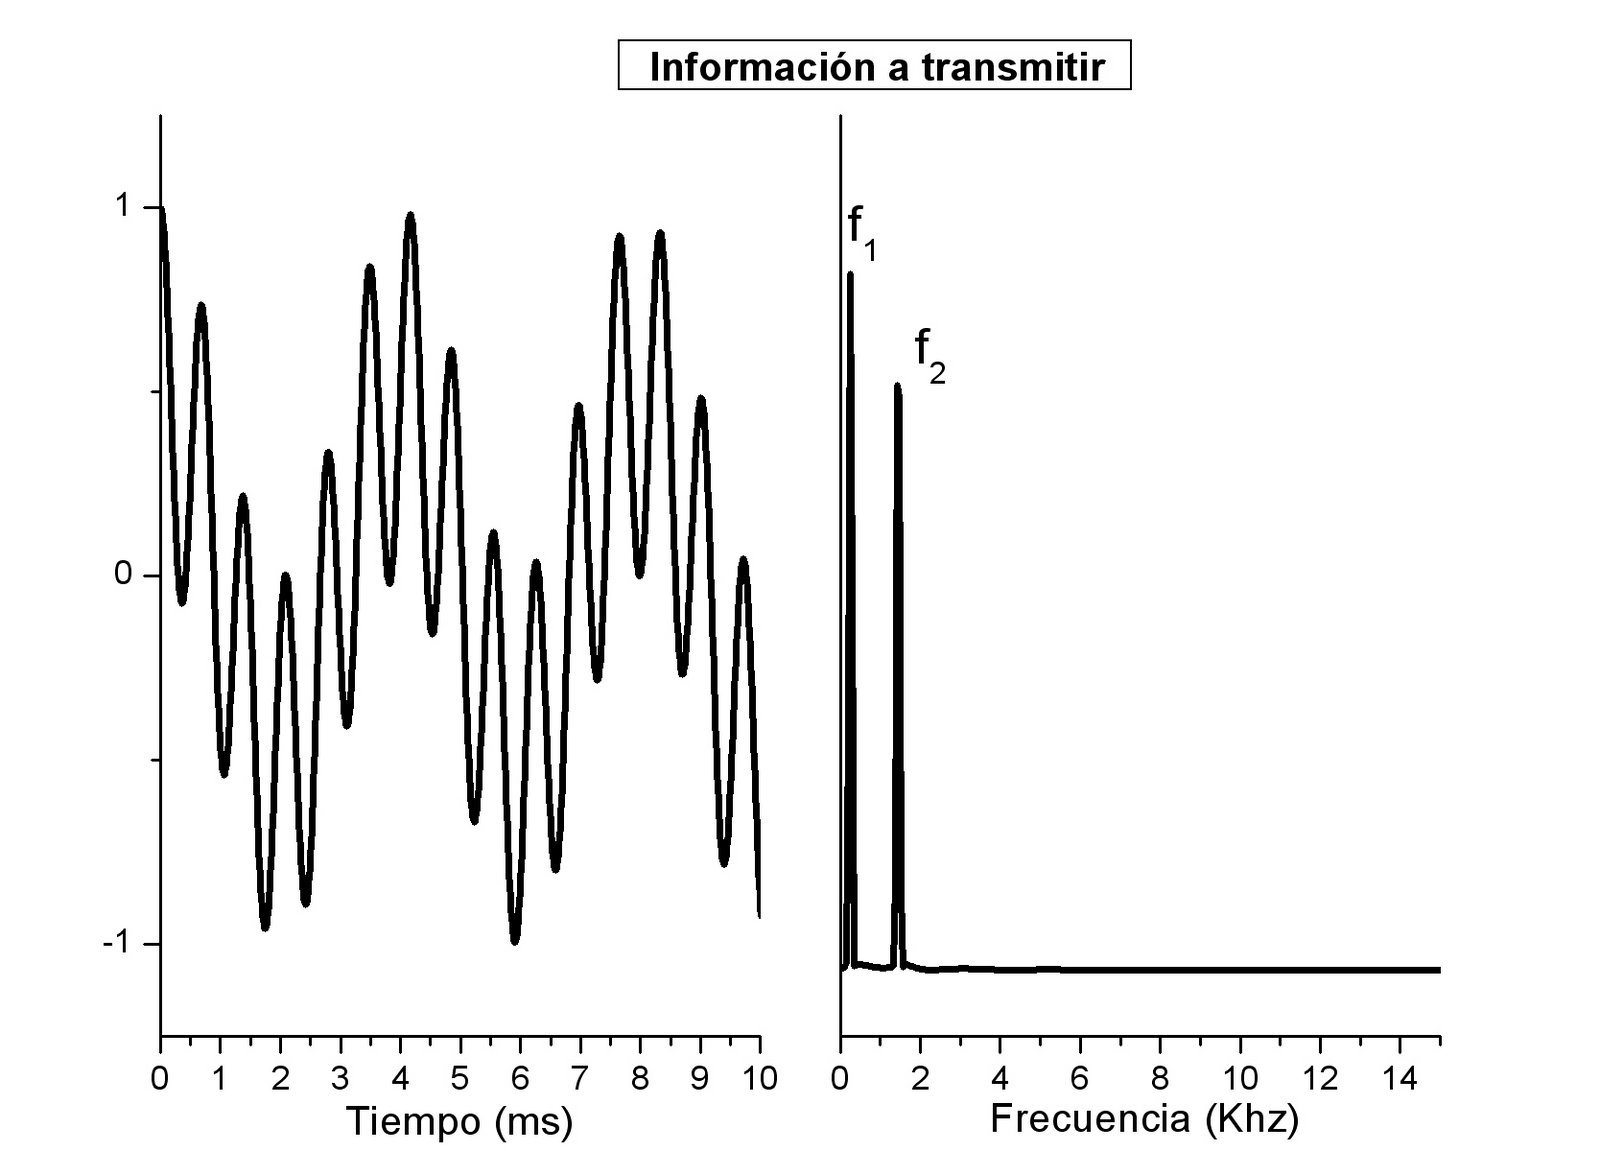 Información que se quiere transmitir, compuesta por una señal con dos frecuencias